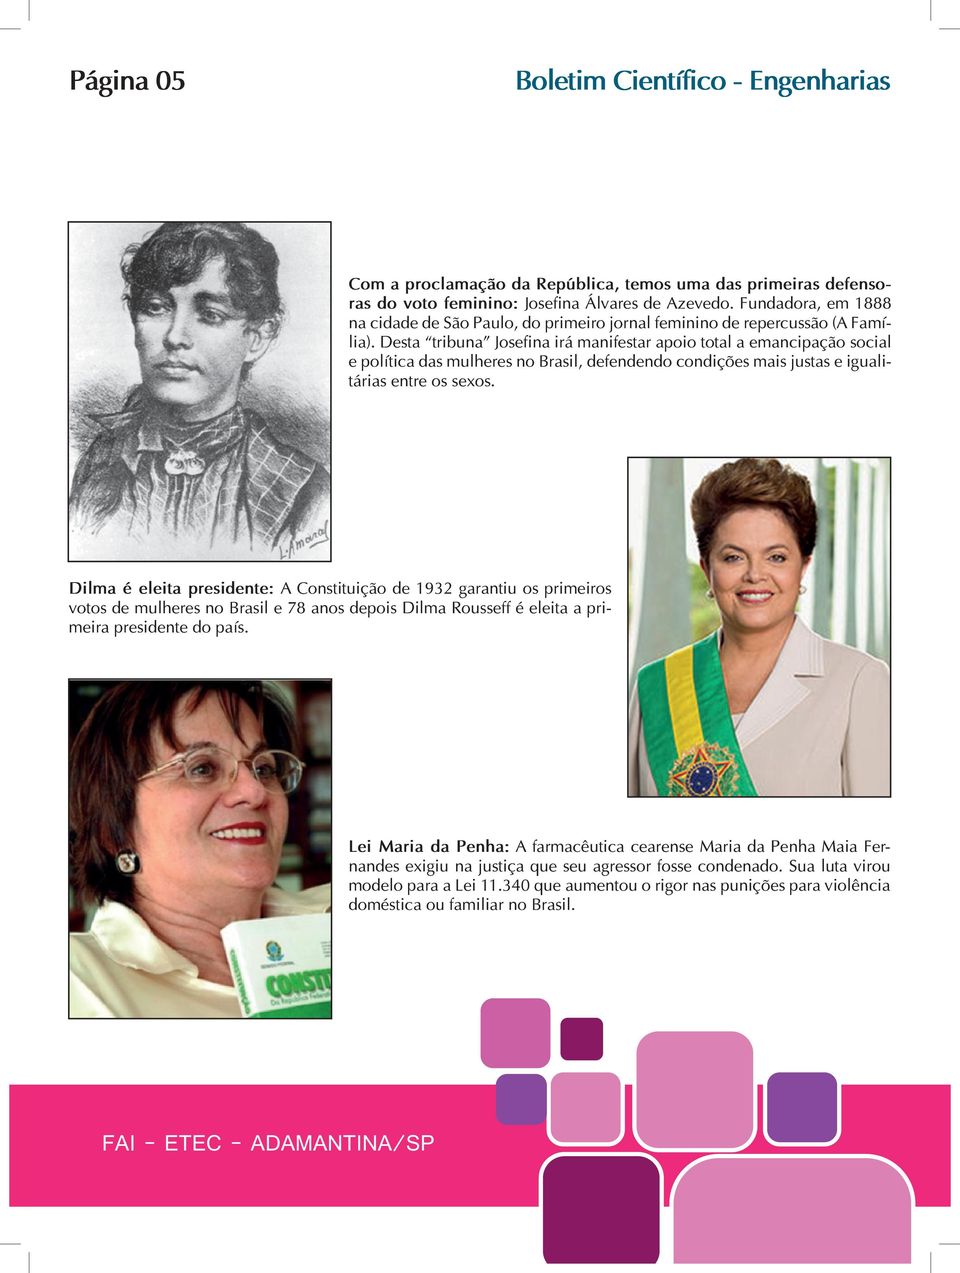 Desta tribuna Josefina irá manifestar apoio total a emancipação social e política das mulheres no Brasil, defendendo condições mais justas e igualitárias entre os sexos.